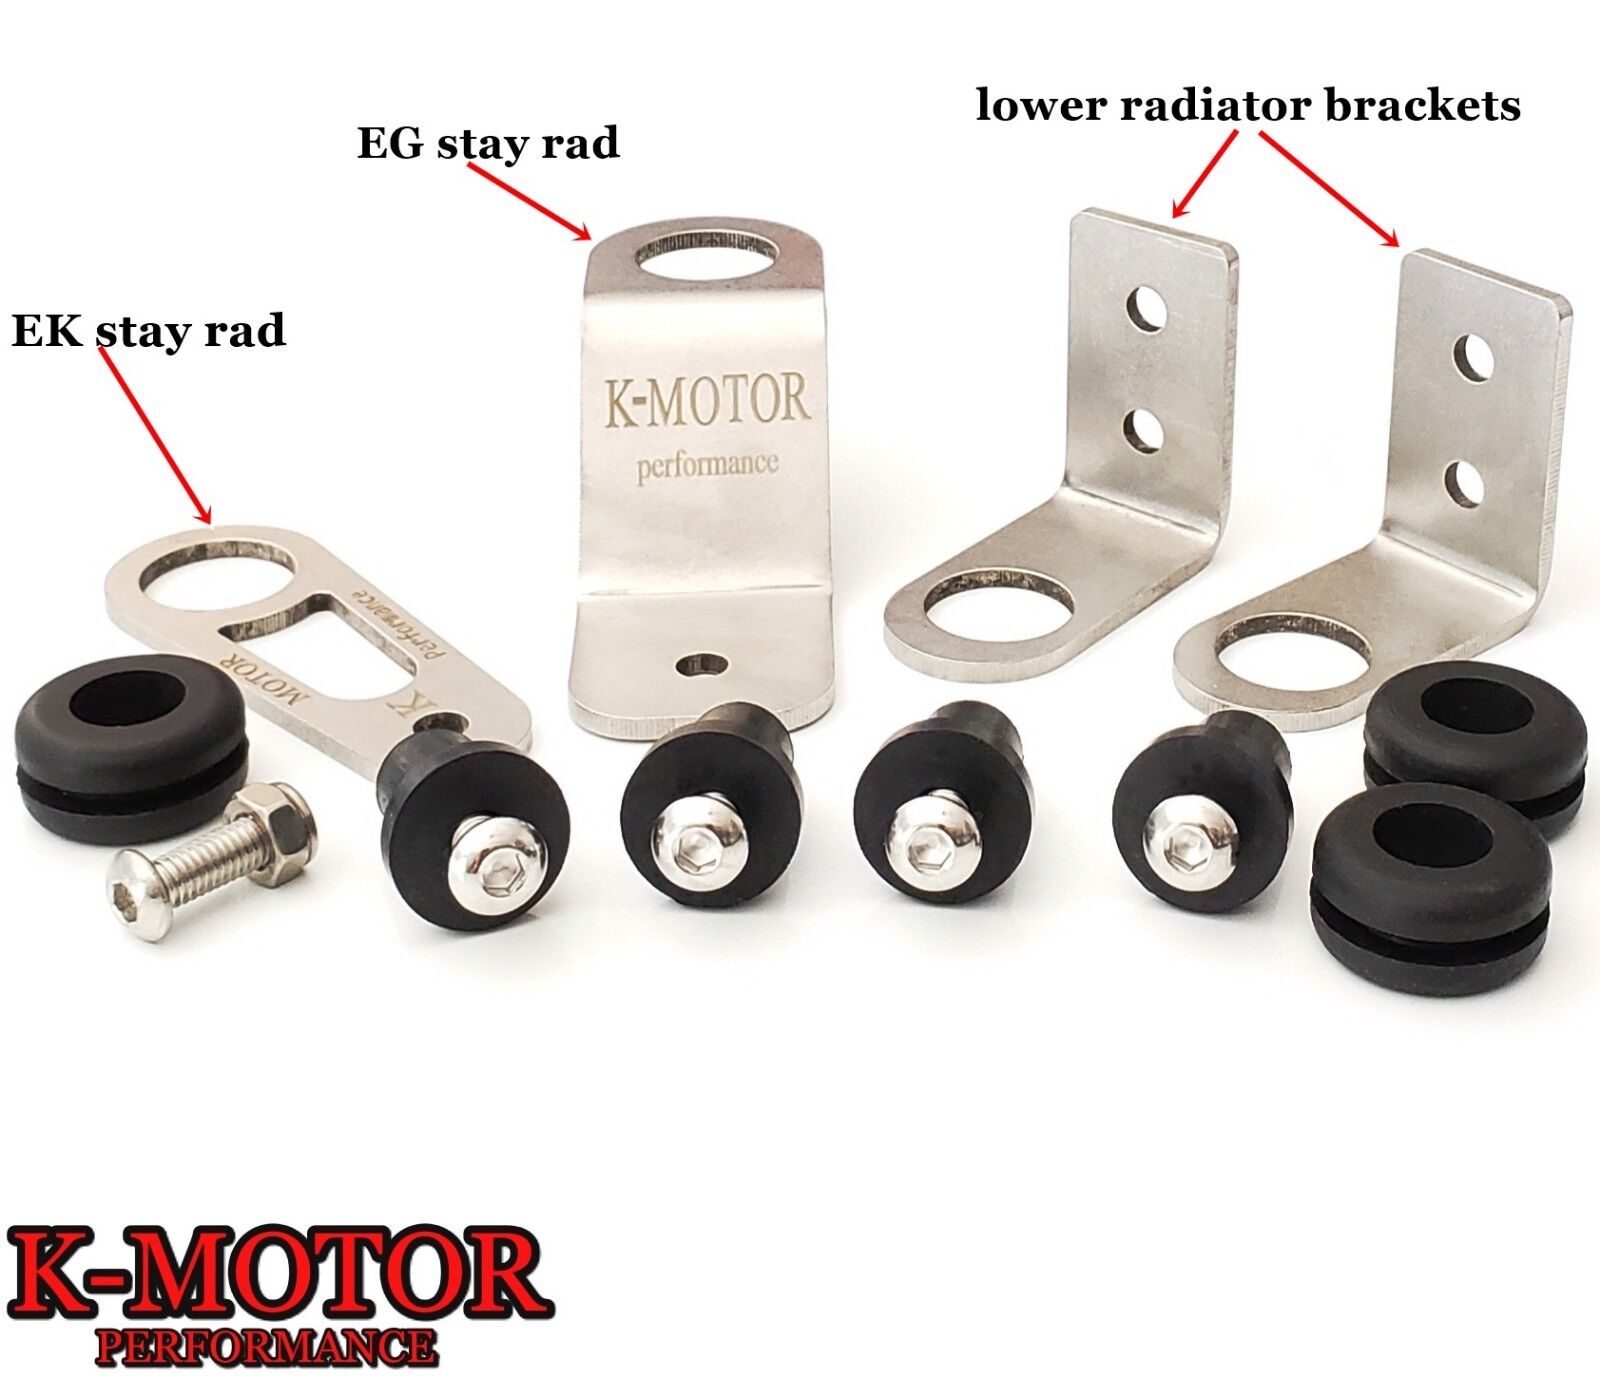 K-MOTOR Bolt-on Radiator Bracket Kit K-Series - For Civic Integra - K-Swap